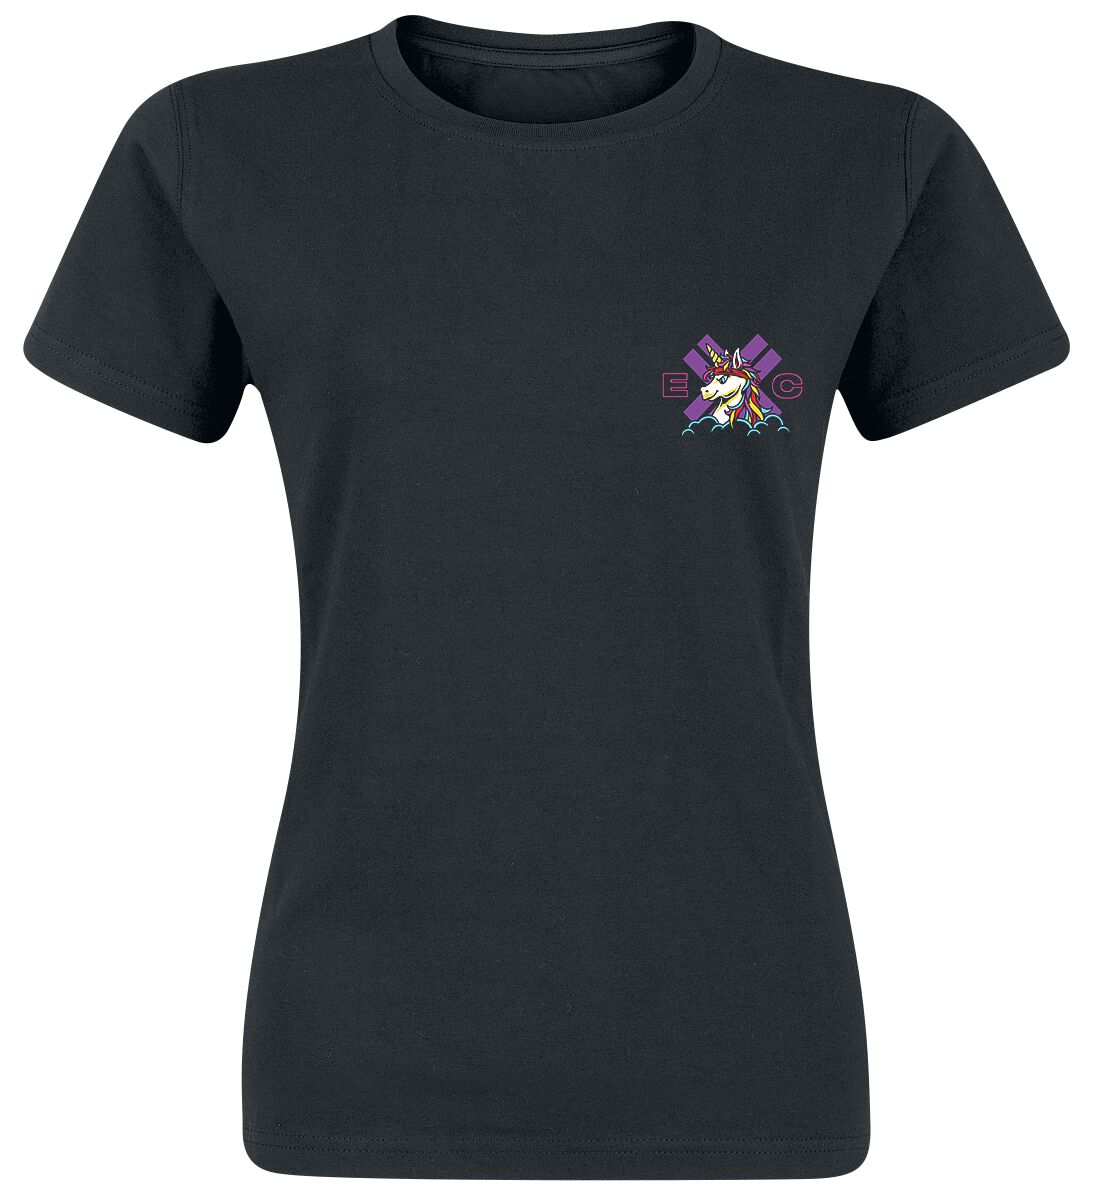 electric callboy t-shirt - spaceman unicorn - m bis xxl - fÃ¼r damen - grÃ¶ÃŸe xxl - - lizenziertes merchandise! schwarz donna